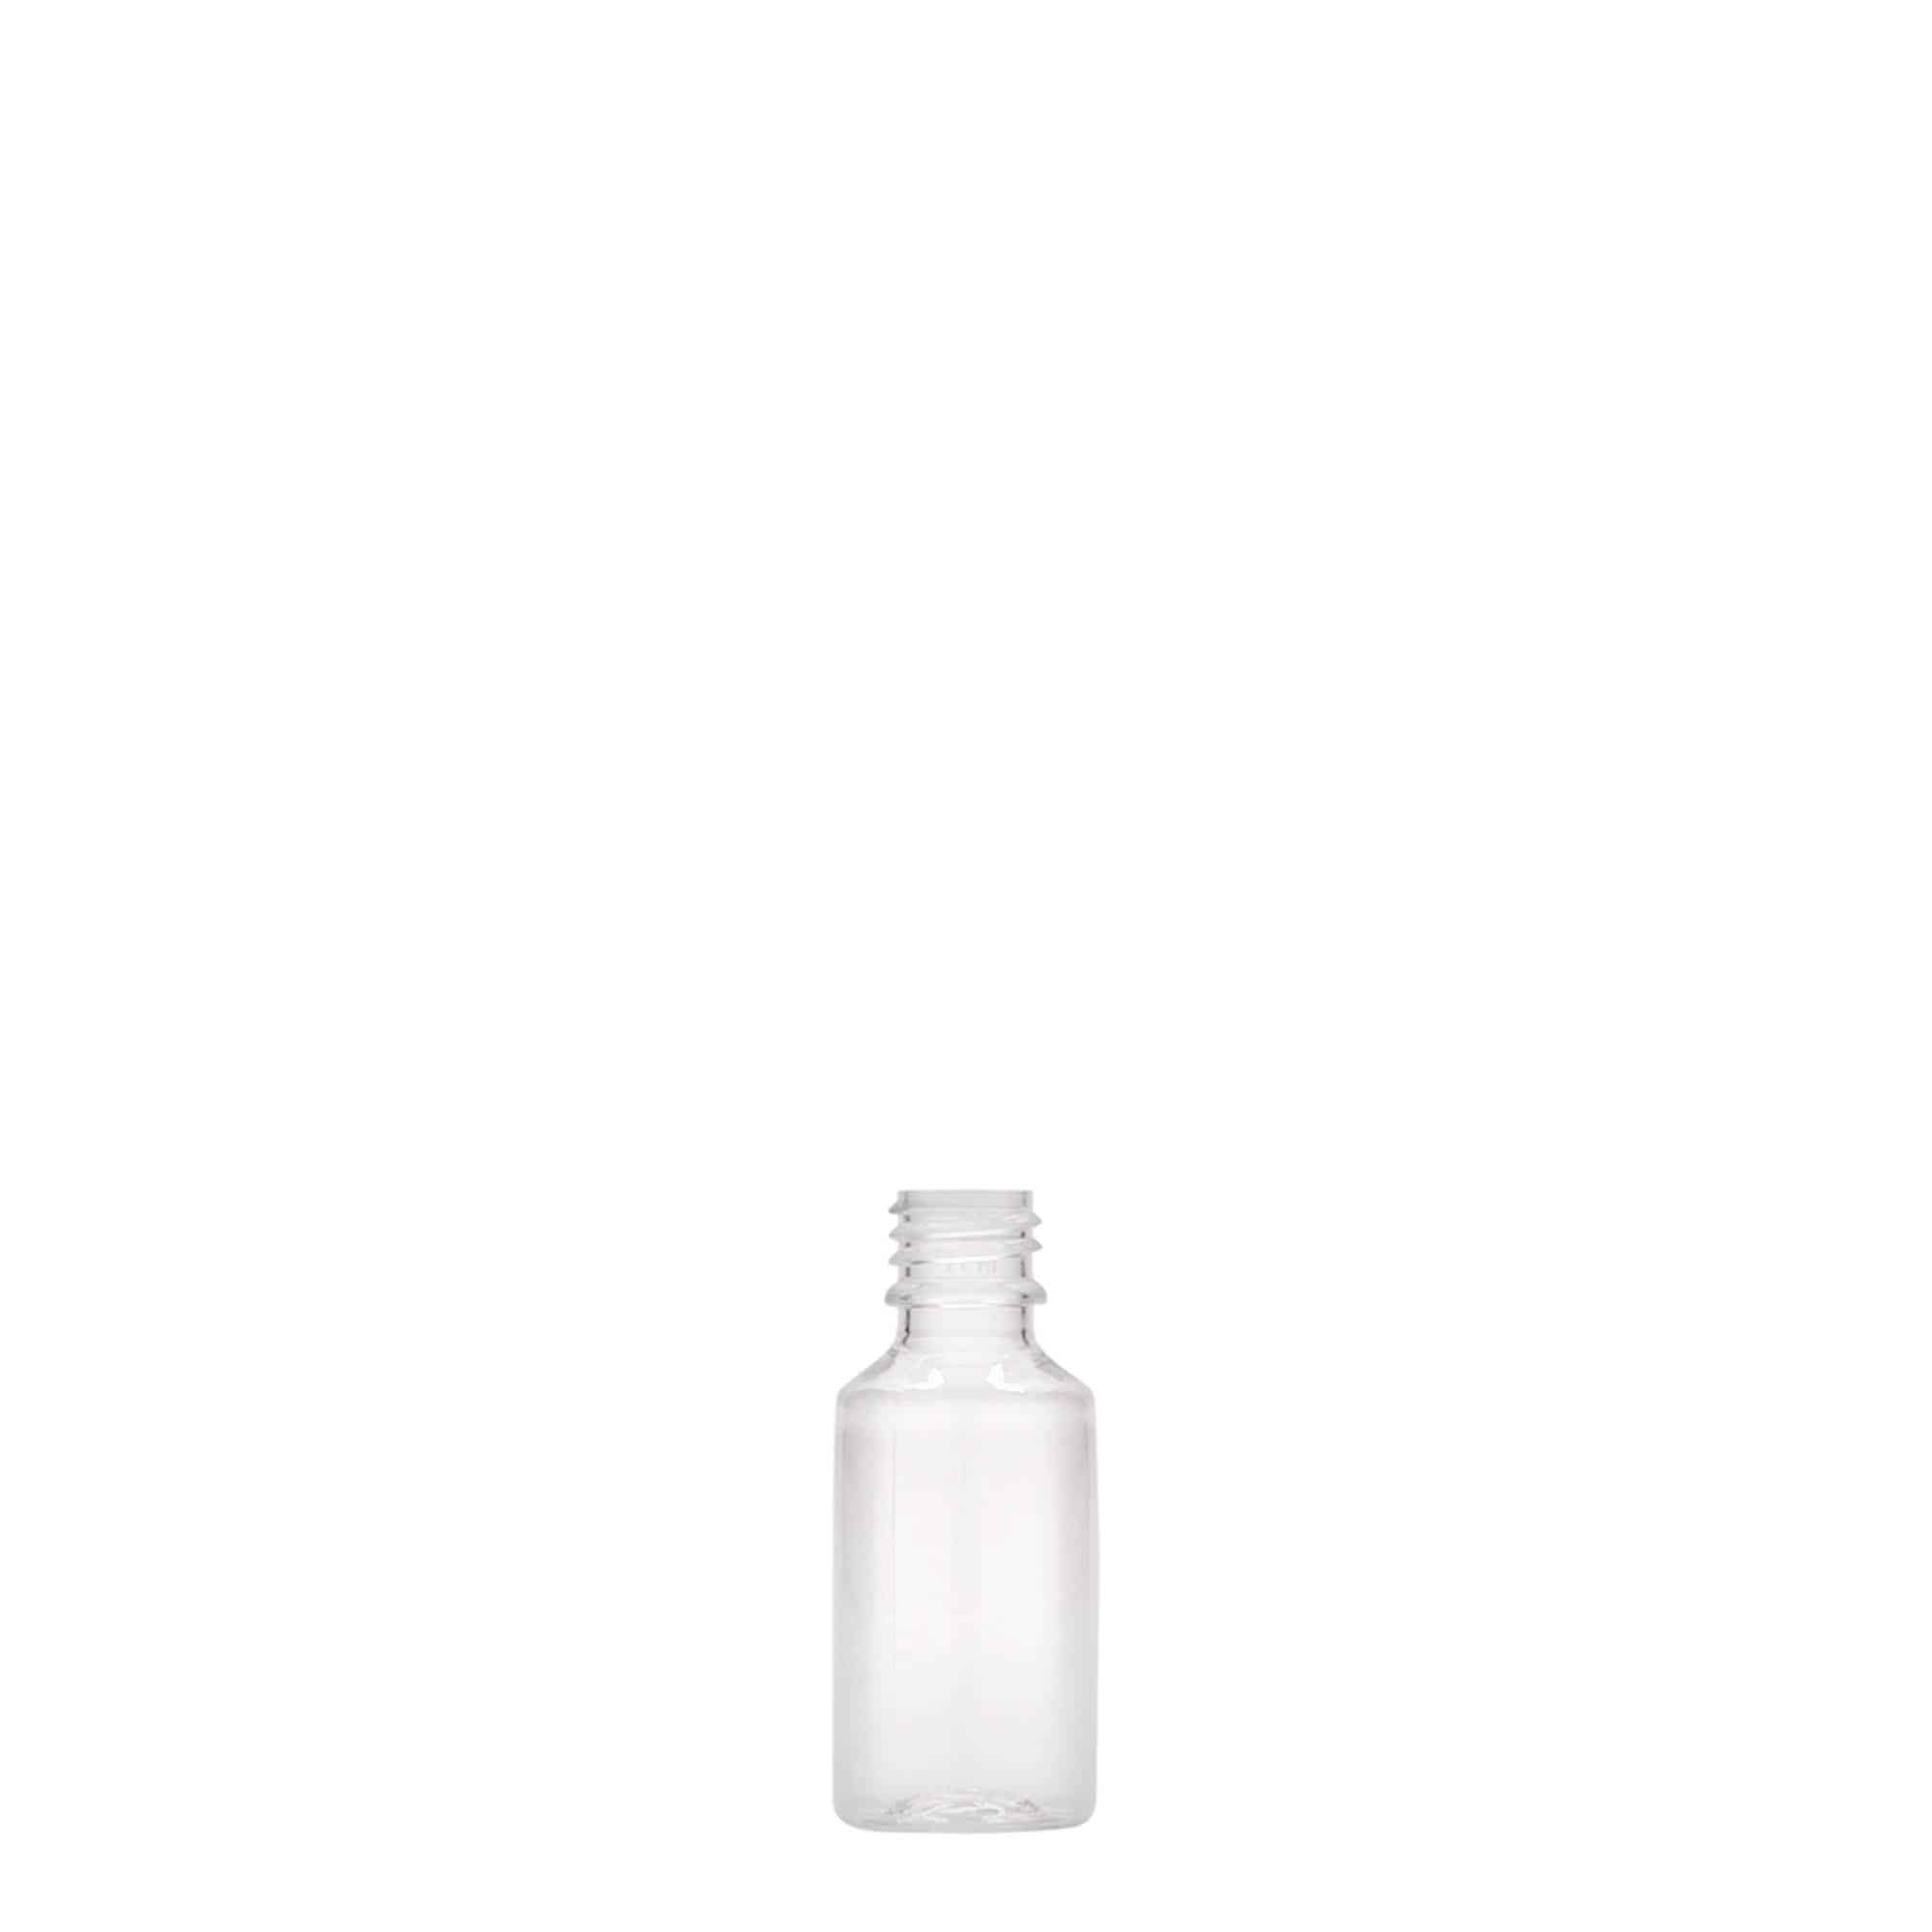 10 ml butelka PET 'E-Liquid' z zabezpieczeniem jakości i zabezpieczeniem przed dziećmi, zamknięcie: zakrętka